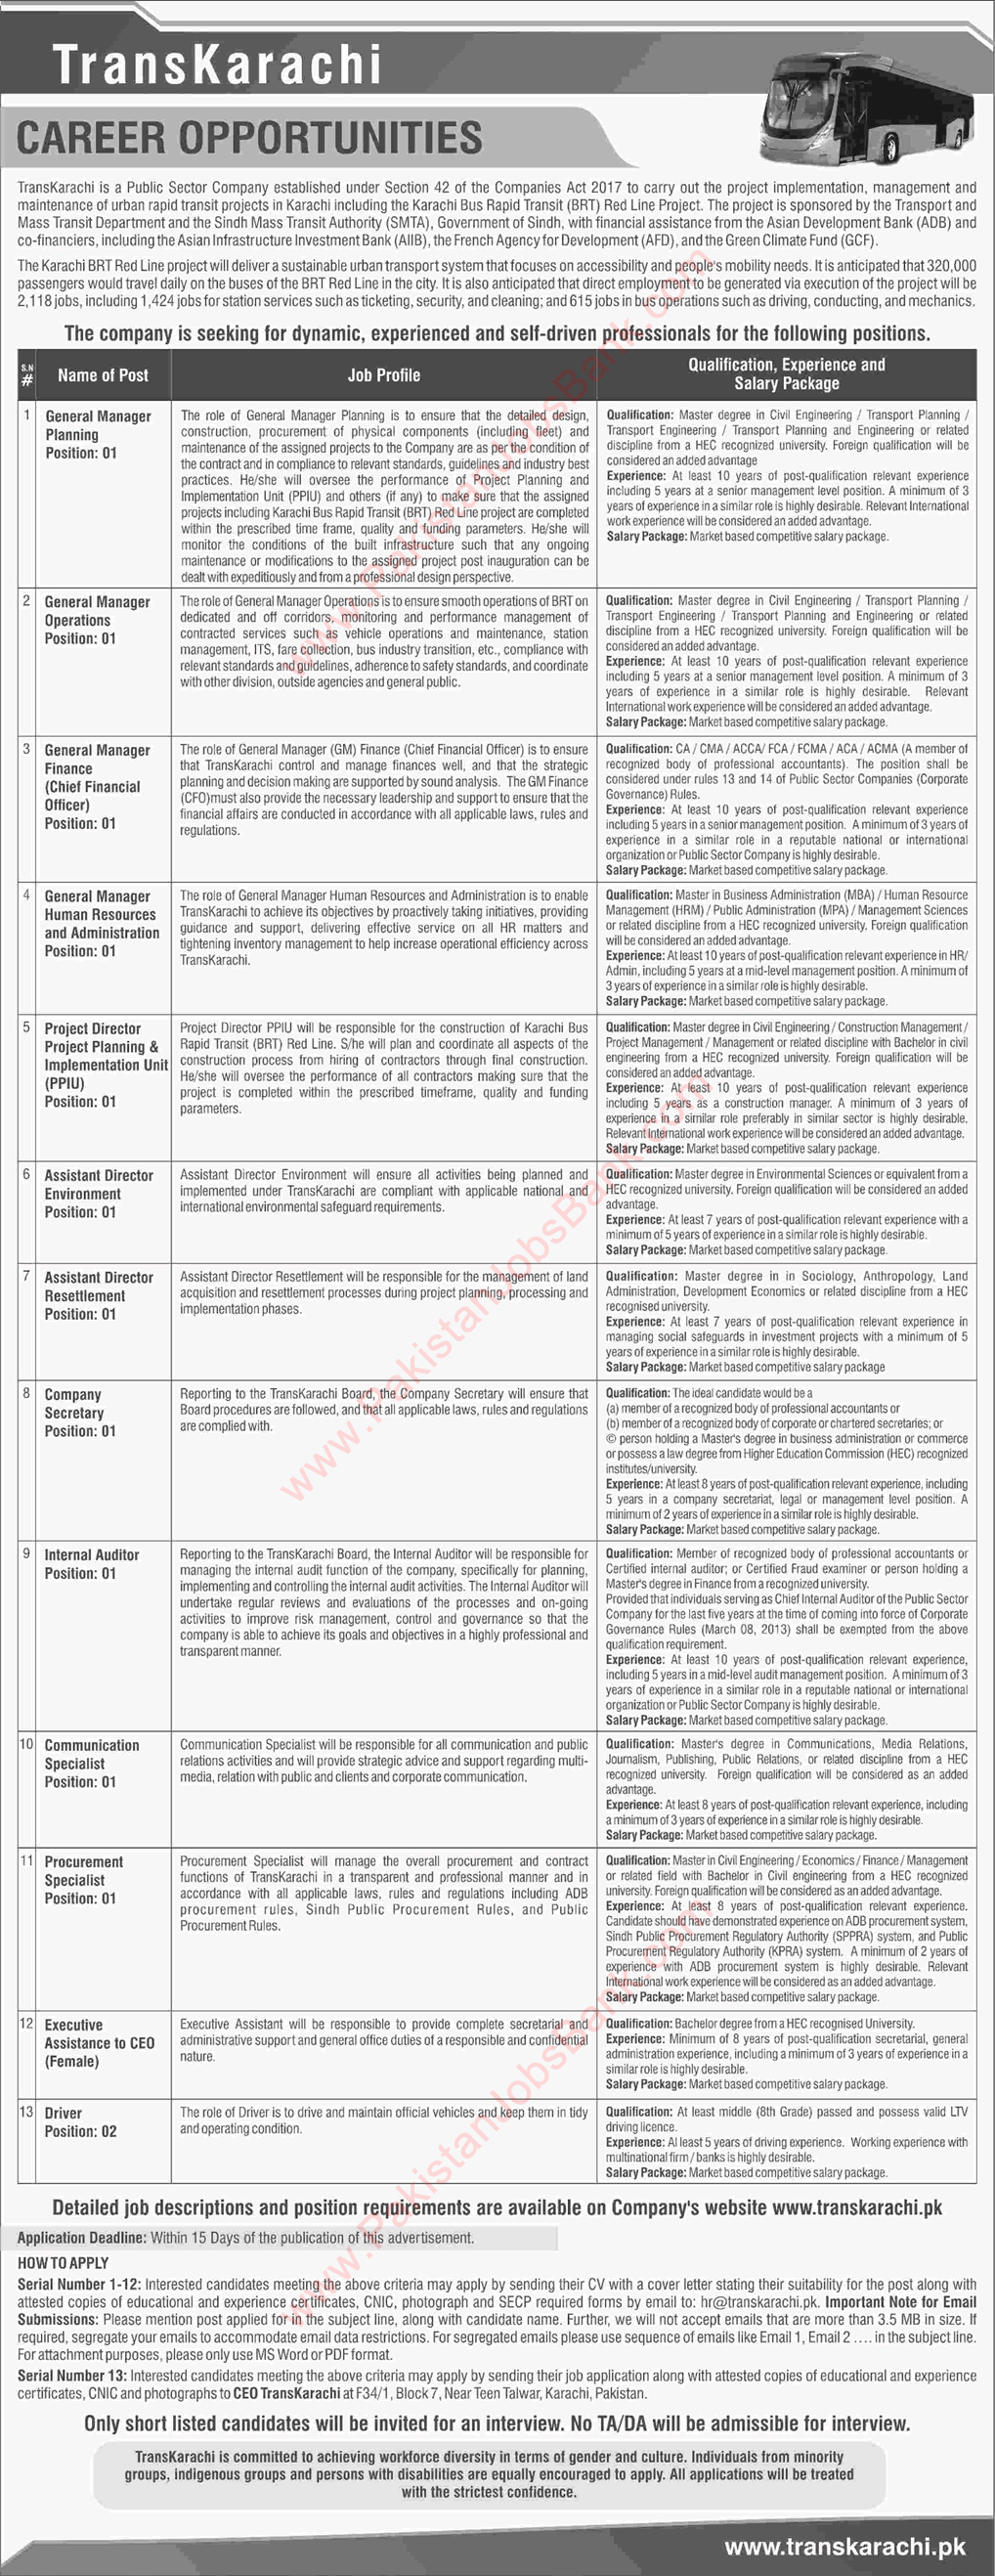 Trans Karachi Jobs 2019 April Communication / Procurement Specialists, Assistant Directors & Others Latest